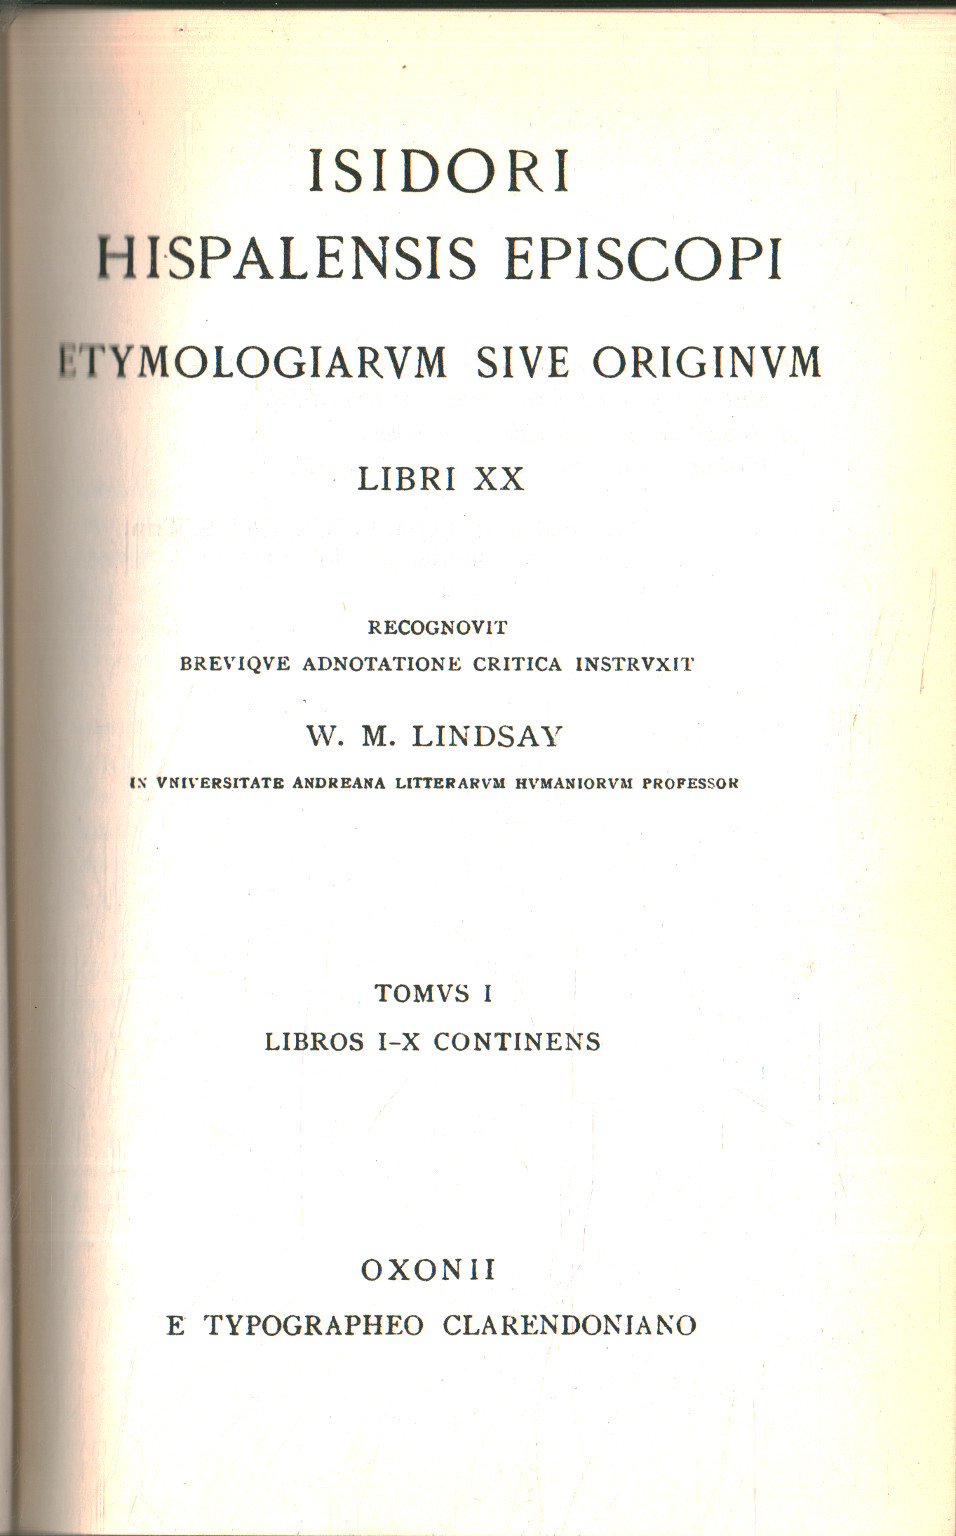 Etymologiarum sive originum. Volume I, Isidori Hispalensis Episcopi